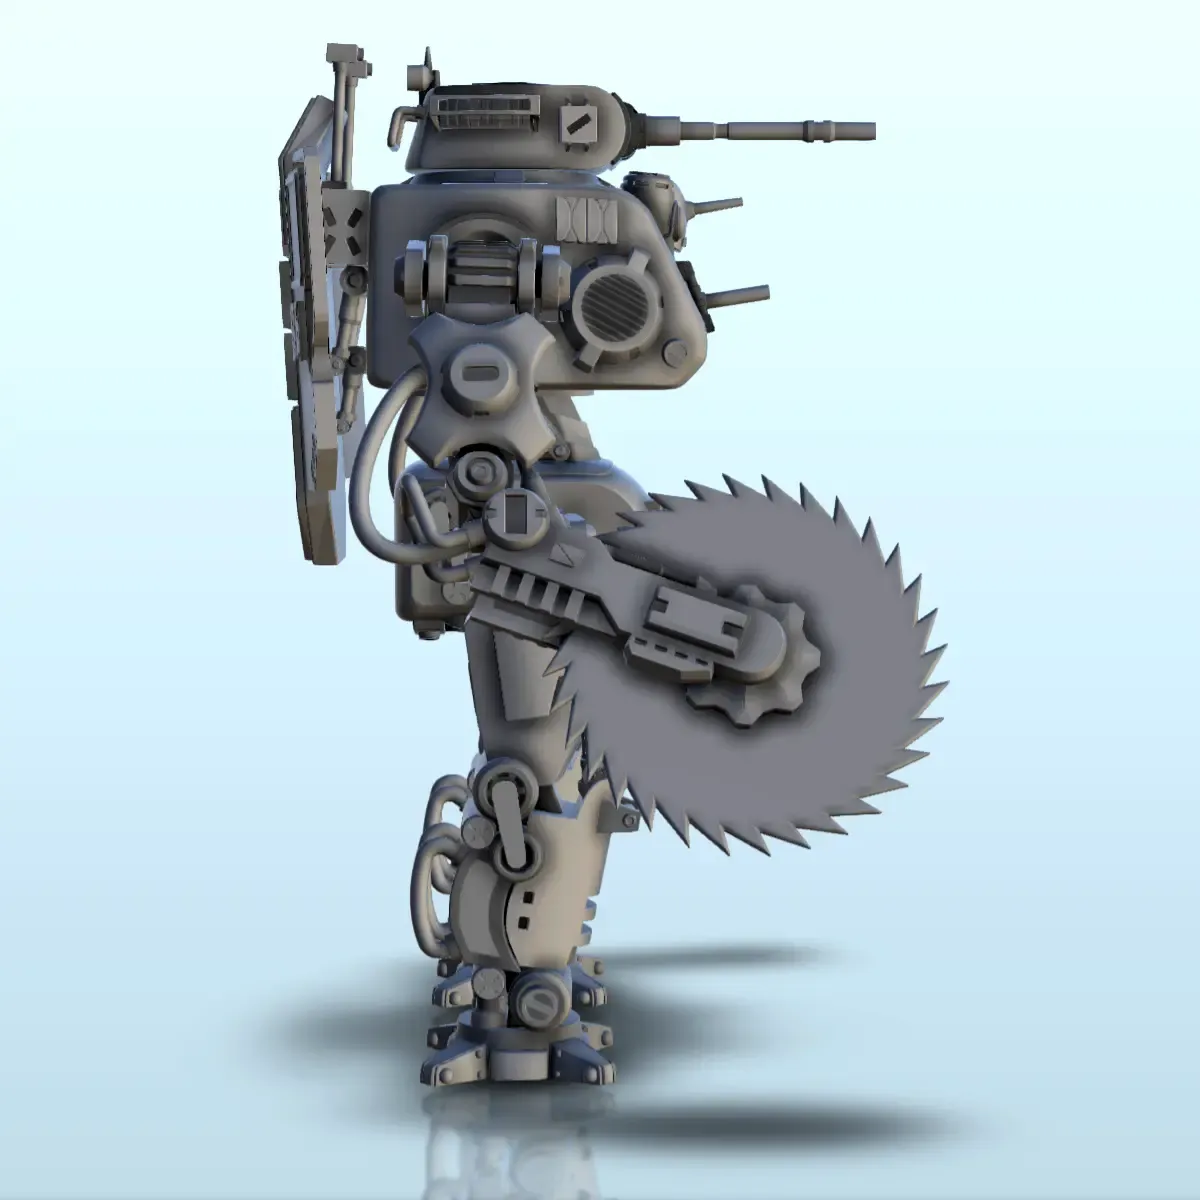 Zihaldin combat robot (23) - sci-fi science fiction future 4